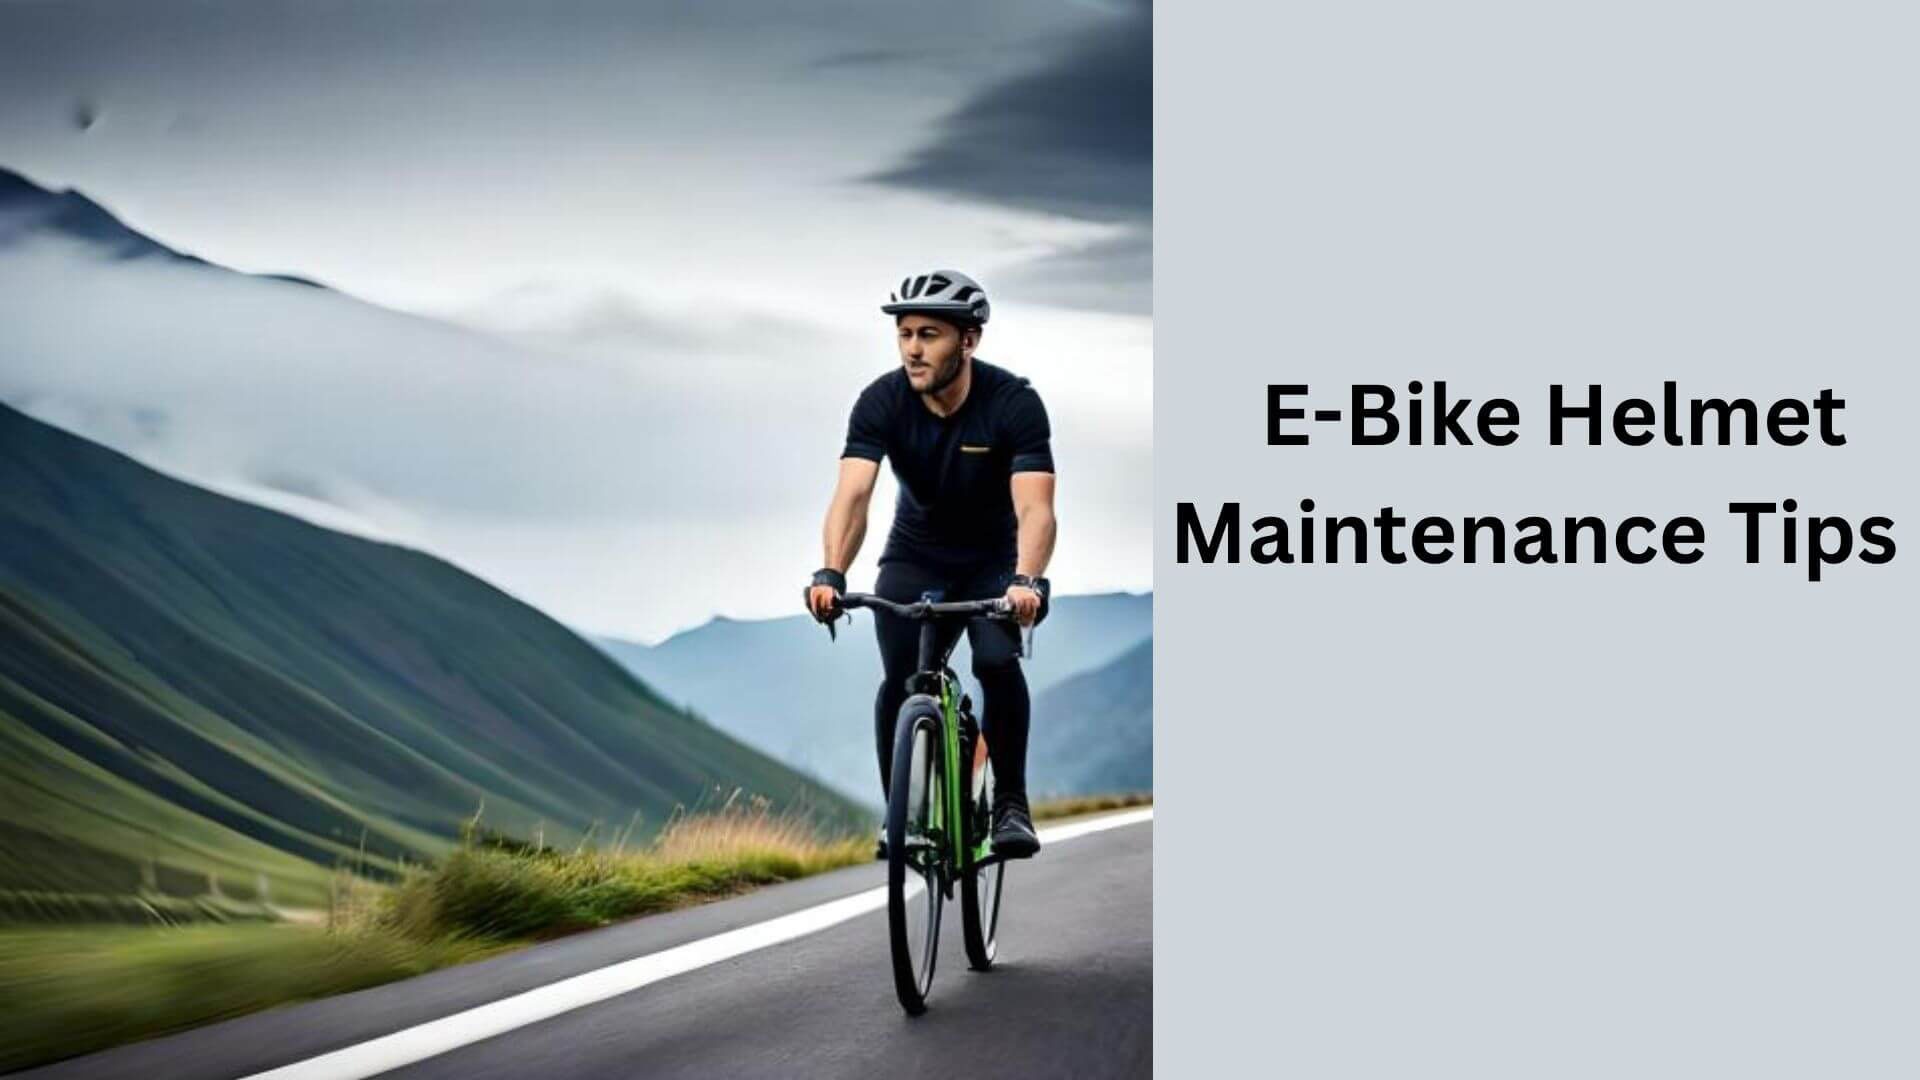 E-Bike Helmet Maintenance Tips